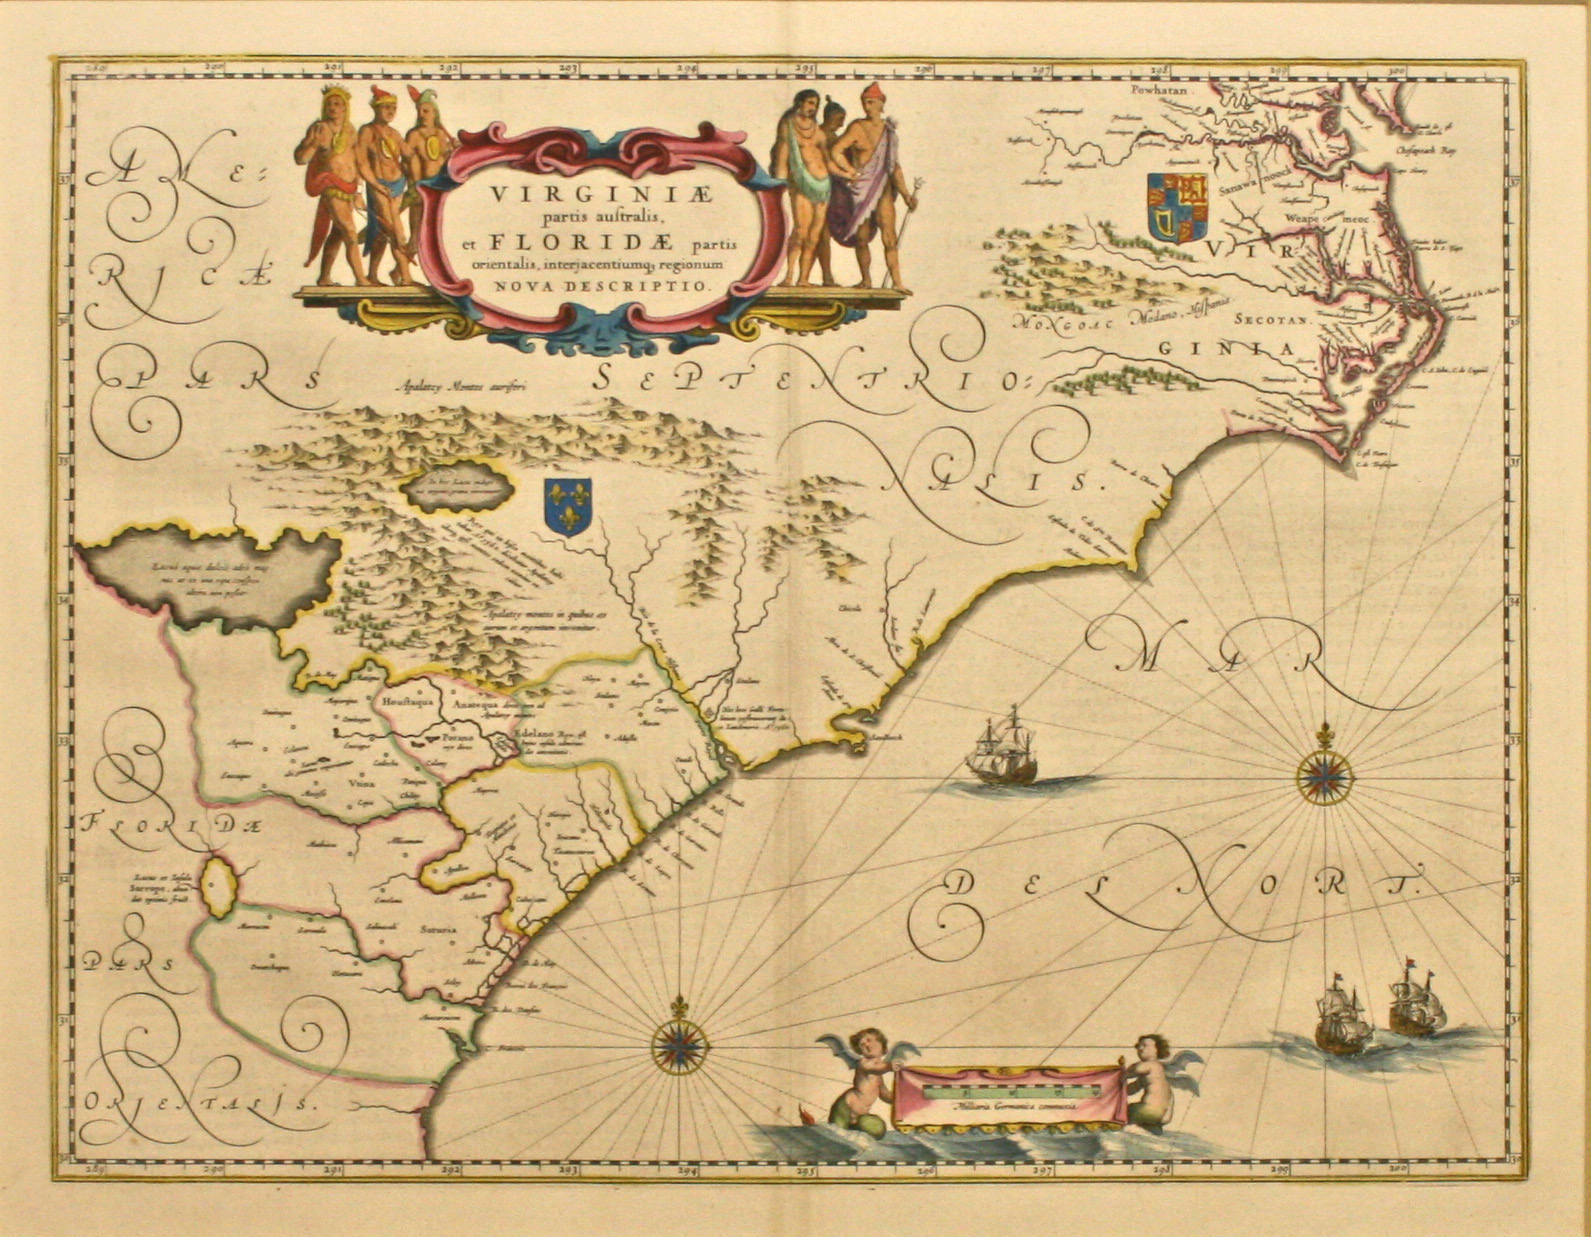 Virginiae et Floridae 1650